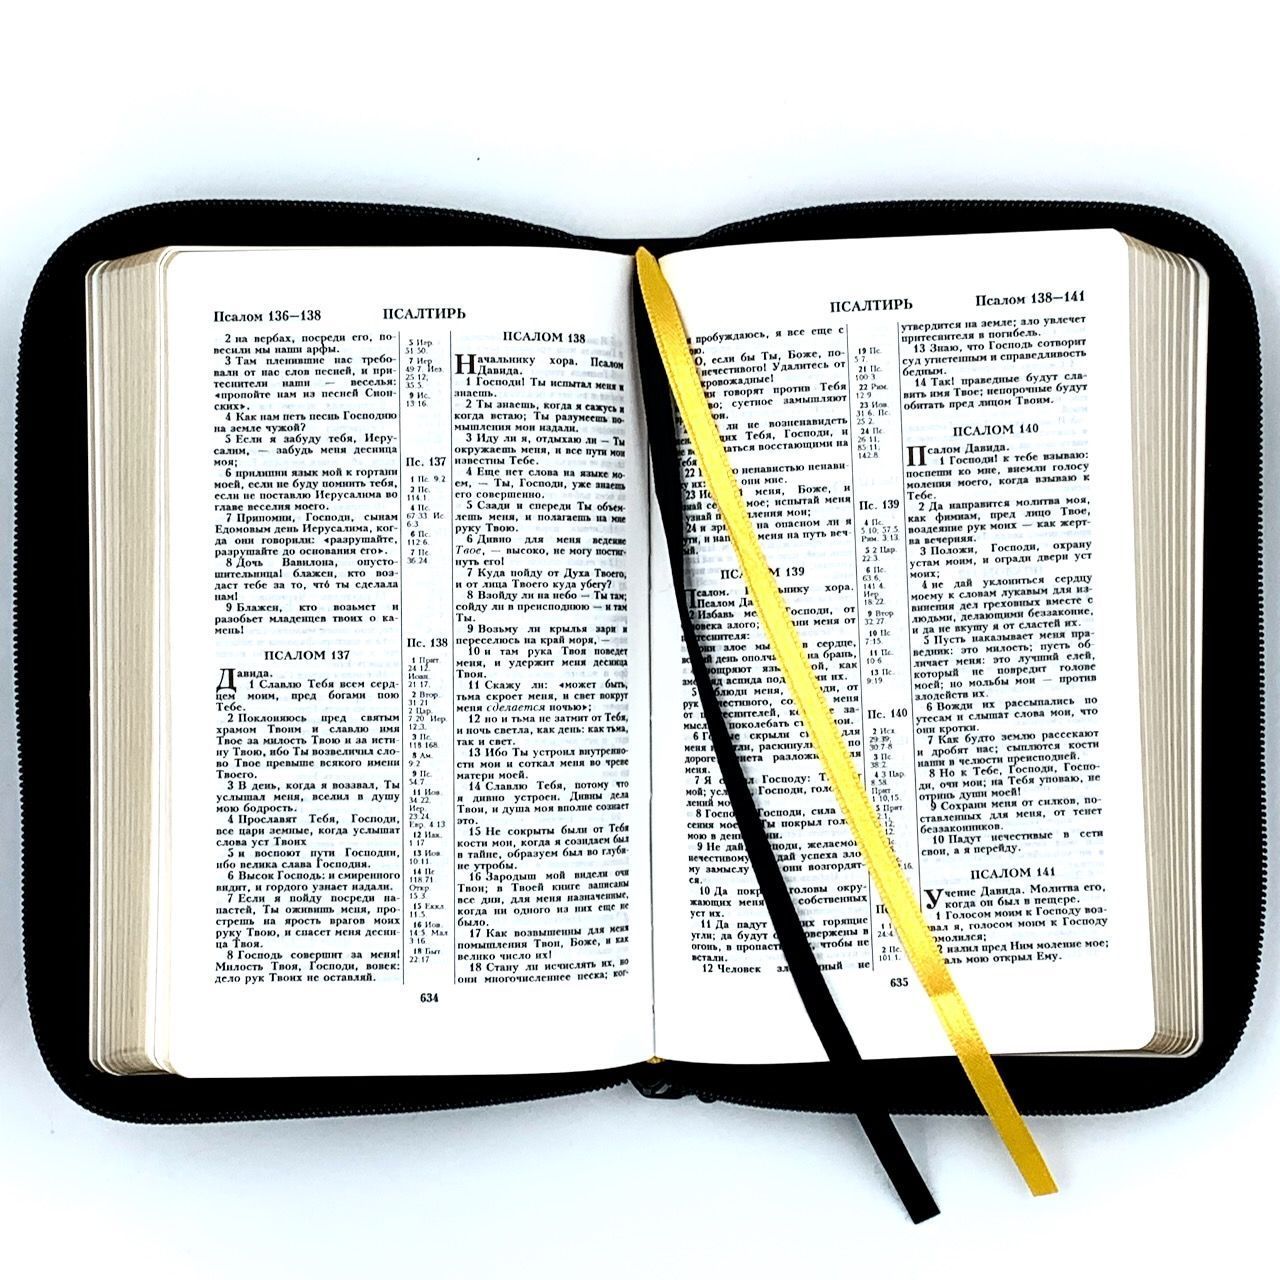 Библия 048 z код 24048-11 дизайн "Библия с вензелем", кожаный переплет на молнии, цвет черный, формат 125*195 мм